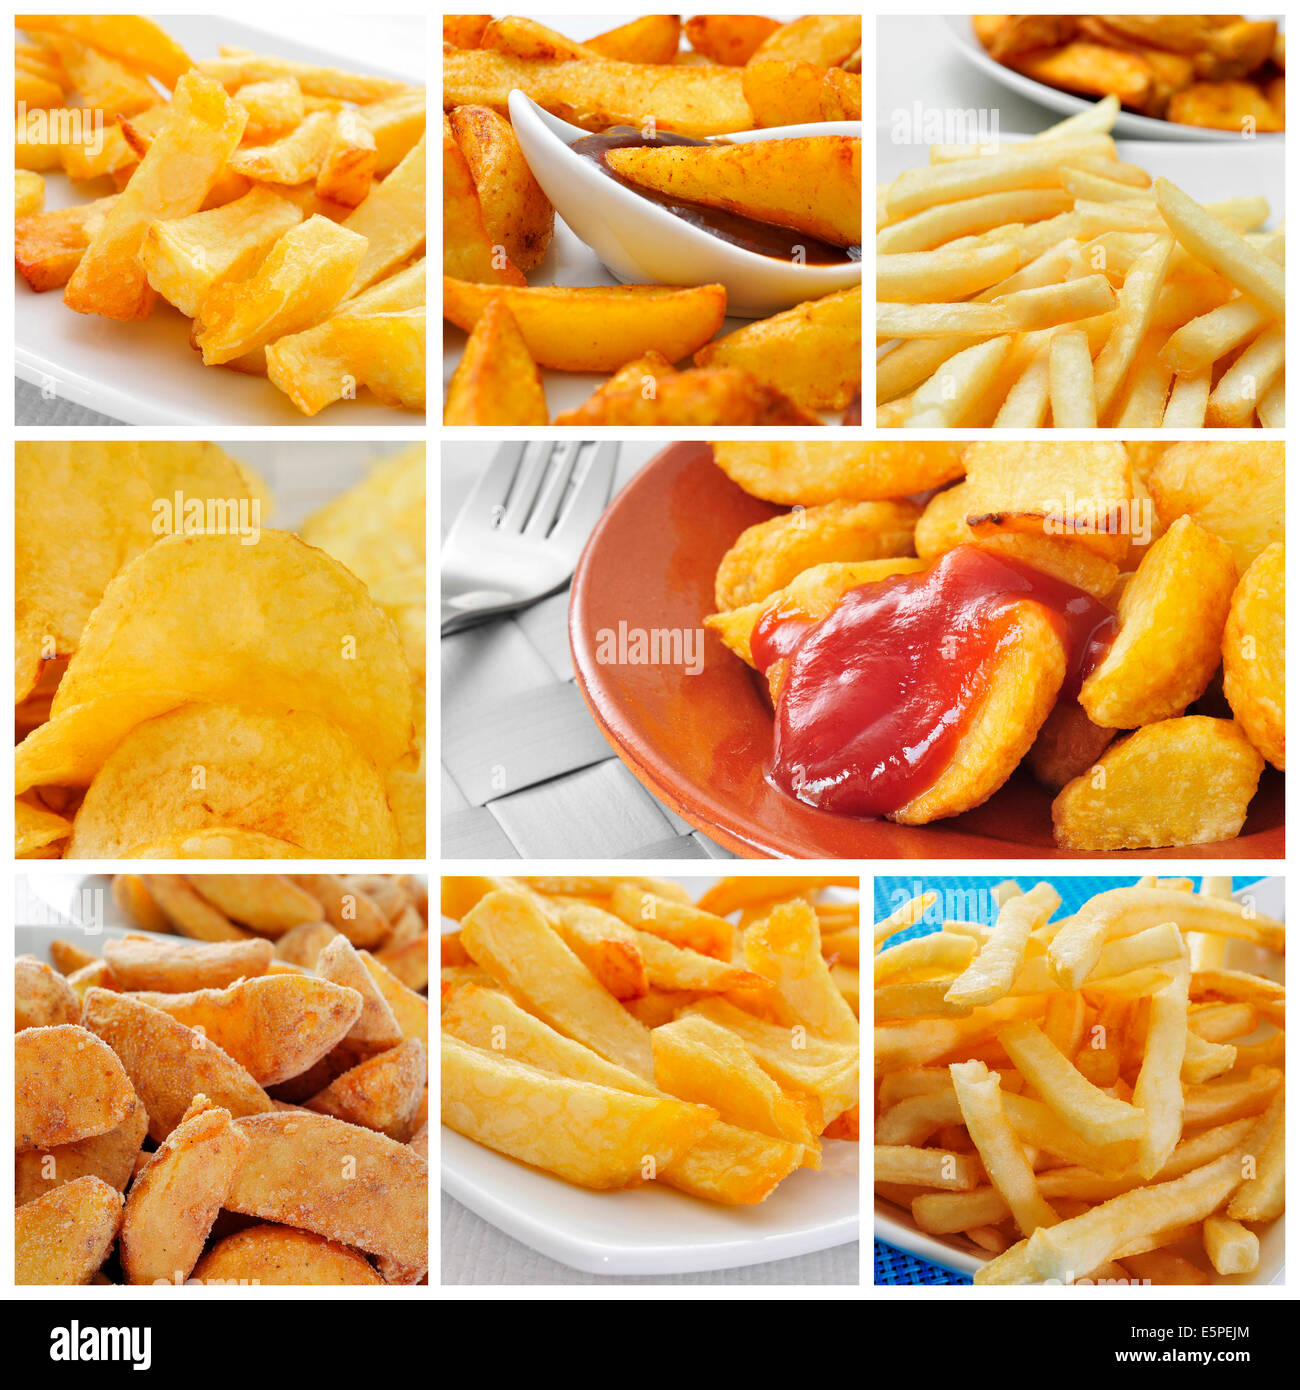 Un montage de quelques photos de différents types de pommes de terre, comme les frites, les croustilles, les frites maison ou patatas brava Banque D'Images